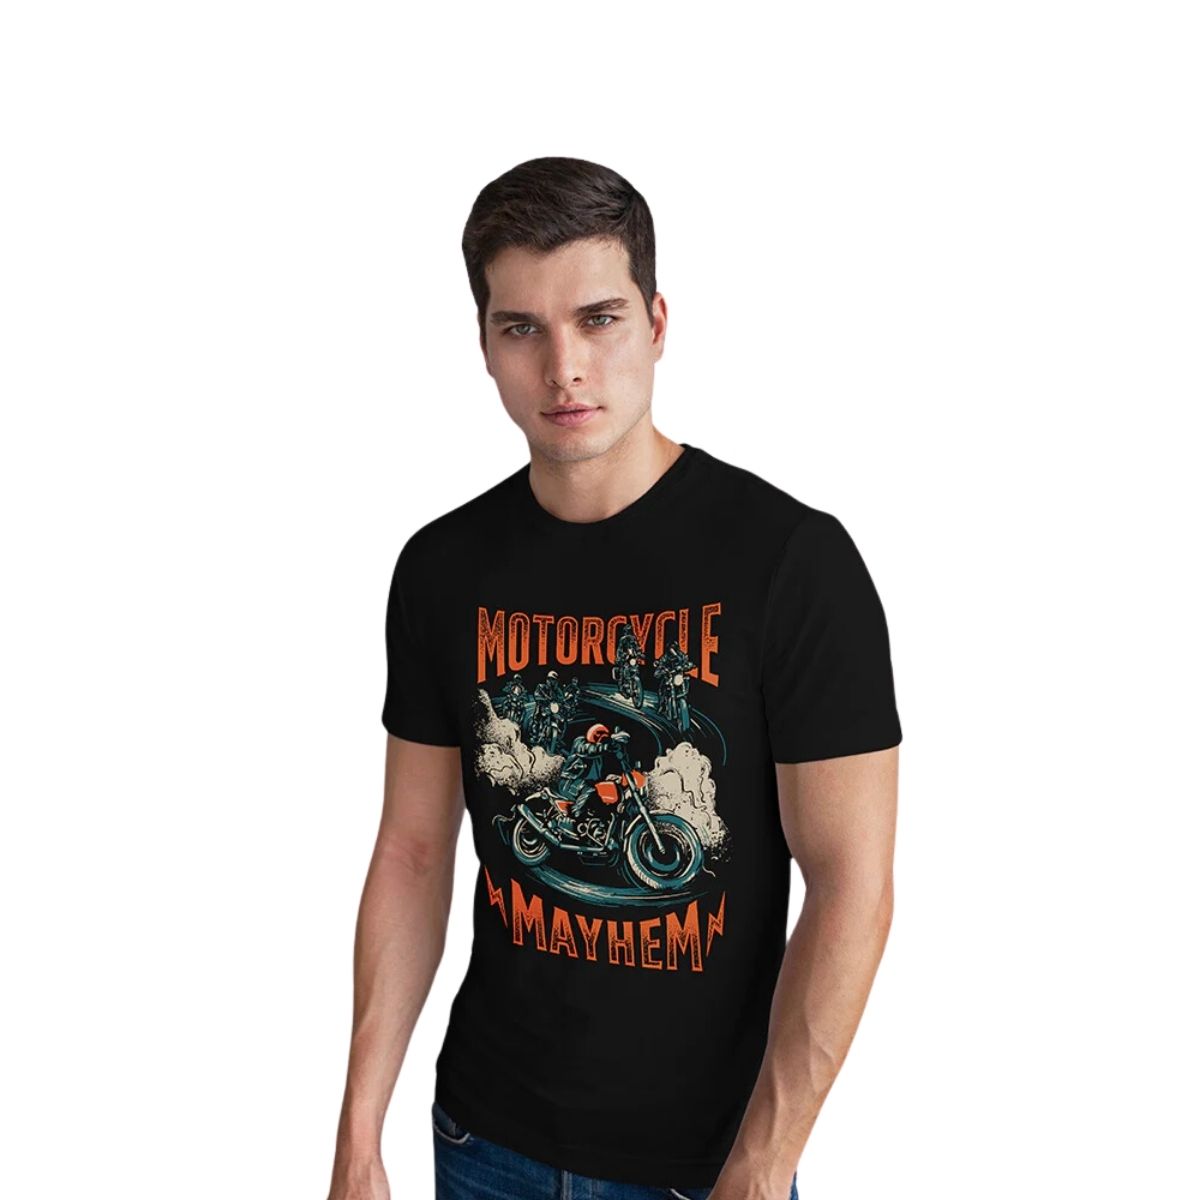 Motorcycle Mayhem T-Shirt - Unisex 1